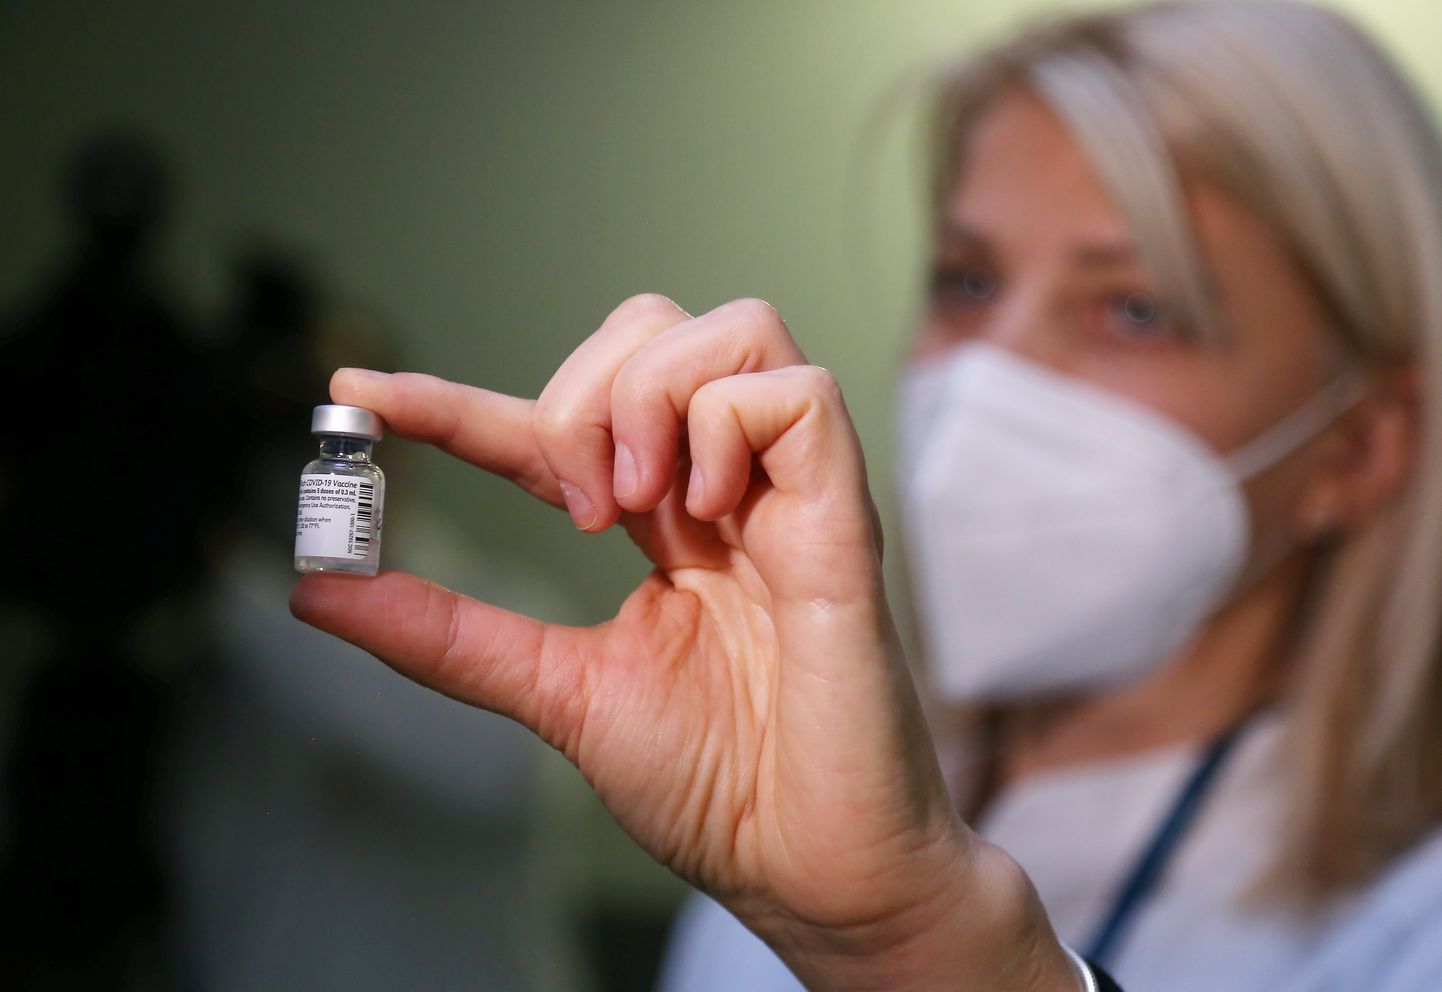 Farmācijas uzņēmuma "Pfizer" un "BioNTech" ražotās vakcīnas "Comirnaty" pret Covid-19 injicēšanu uzsāk Rīgas Austrumu klīniskās universitātes slimnīcas stacionārā "Gaiļezers". Ilustratīvs attēls.